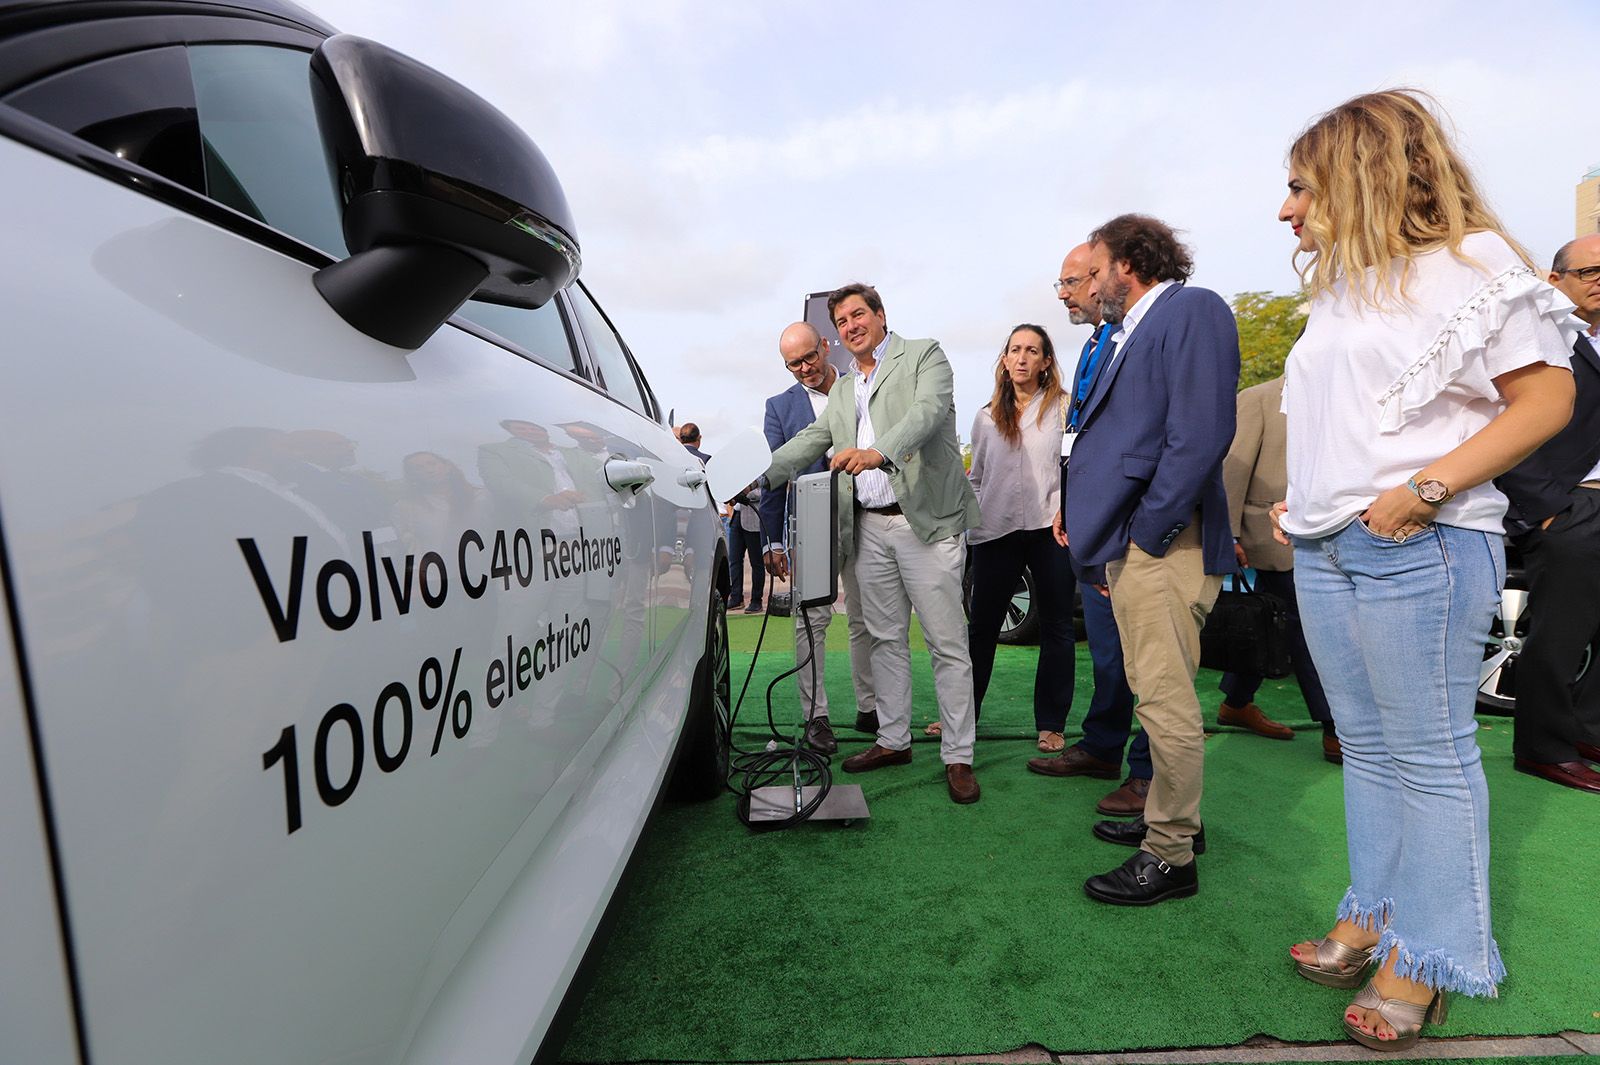 El Vial acoge una gran exposición de vehículos eléctricos